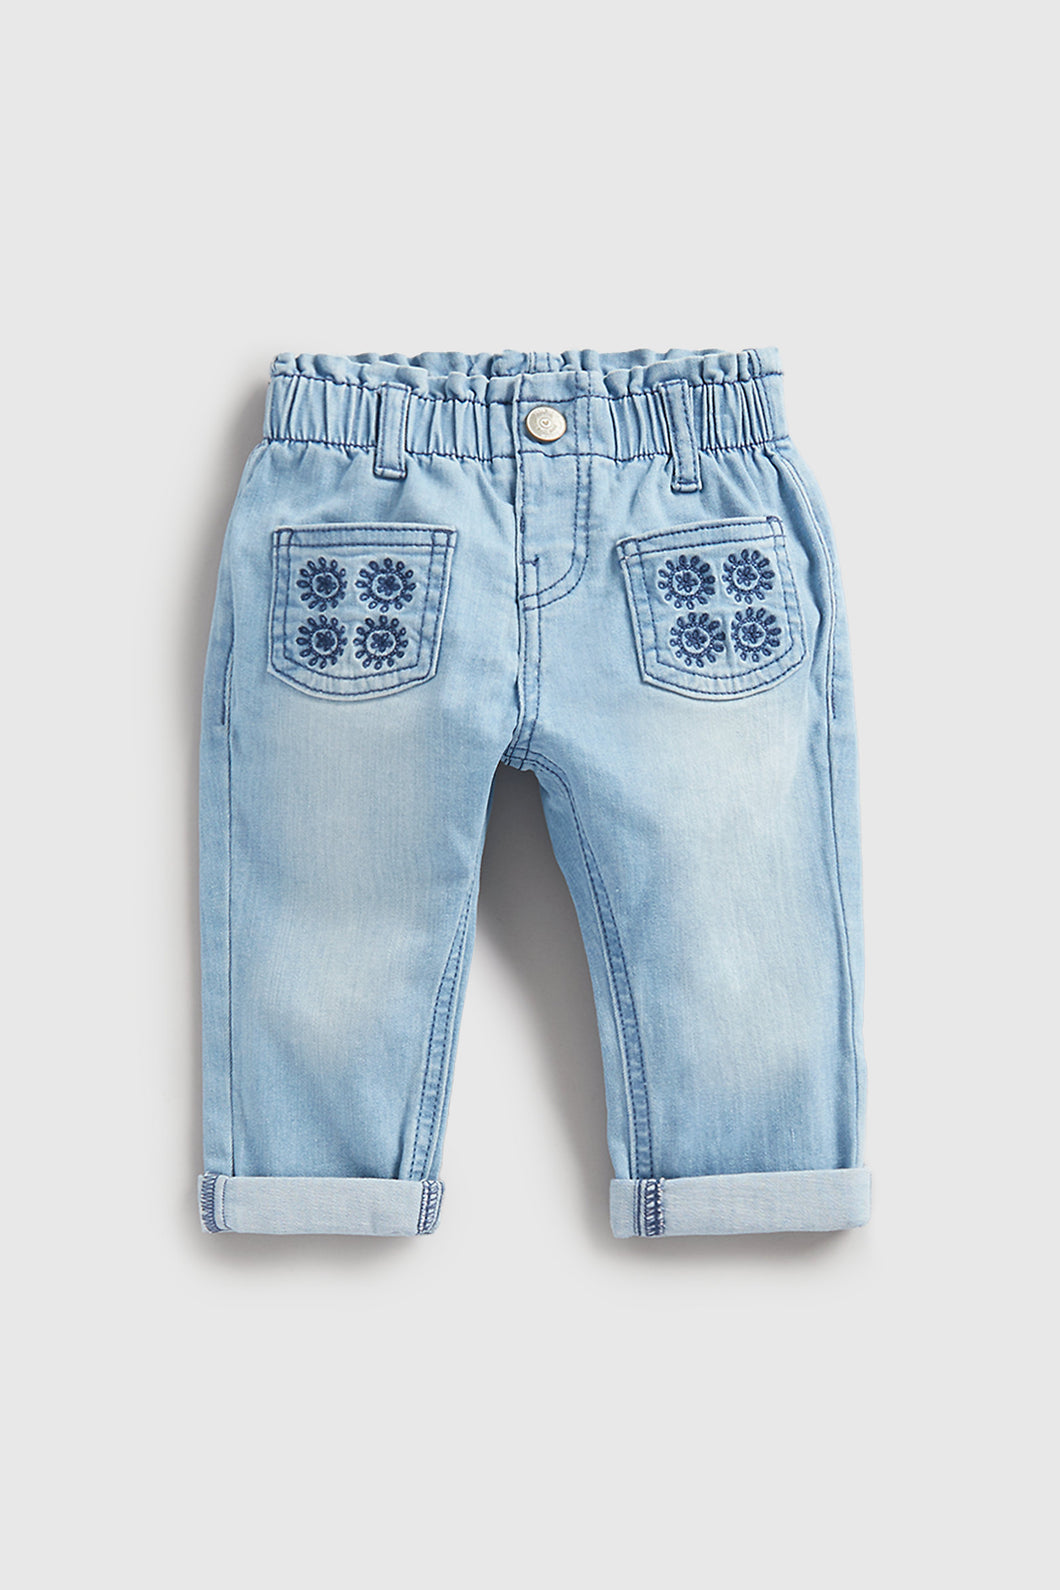 Mothercare Broderie Pocket Denim Jeans